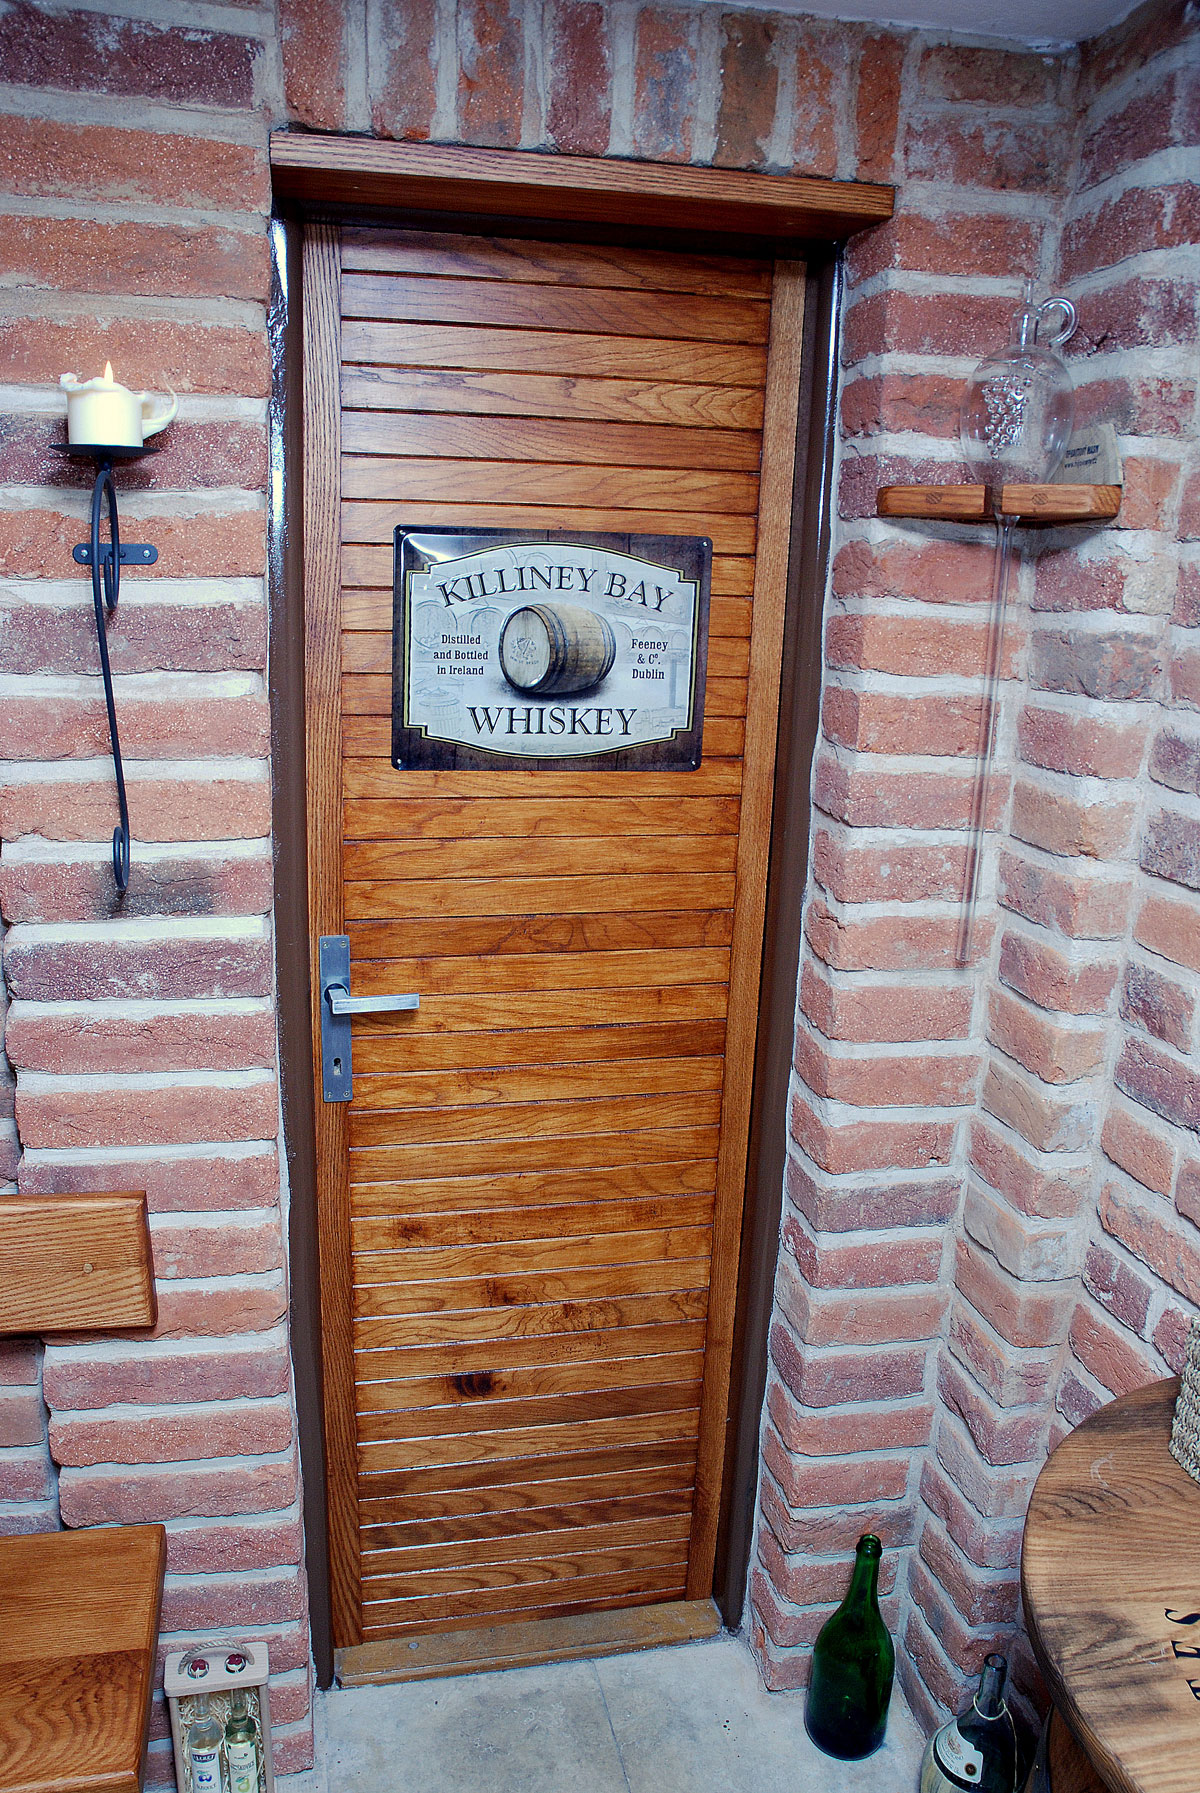 Staré otlučené sklepní dveře zbytkami dubových lišt ve vinném sklípku